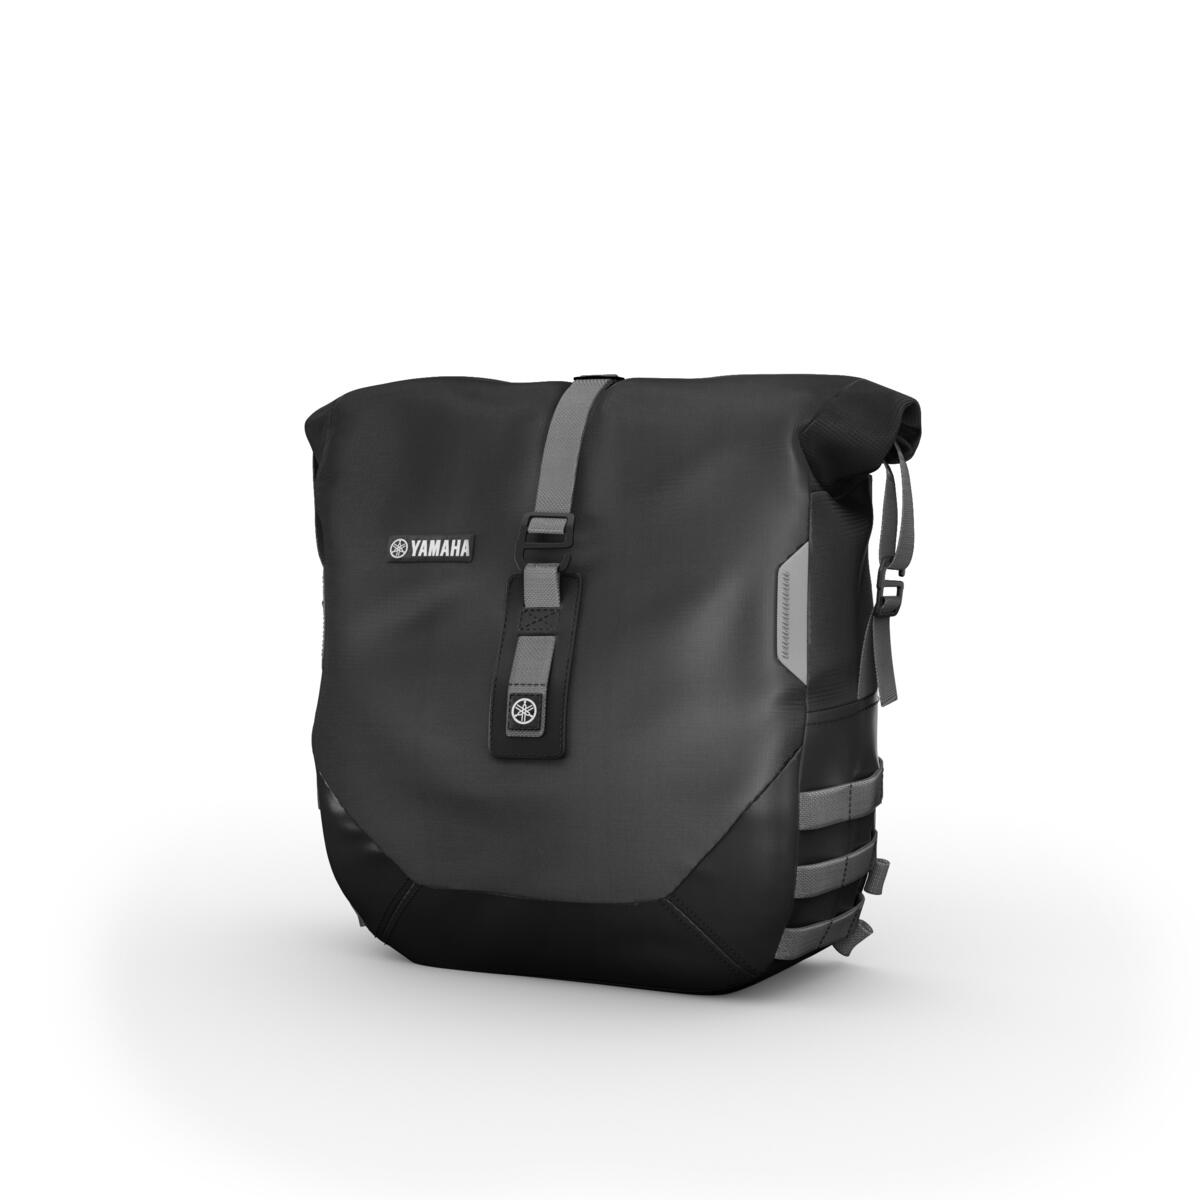 Mäkká bočná taška XSR vpravo s nepremokavou vložkou, kompaktná mäkká taška na batožinu. Umožňuje uložiť 13,5 litra batožiny s maximálnou hmotnosťou3 kg.